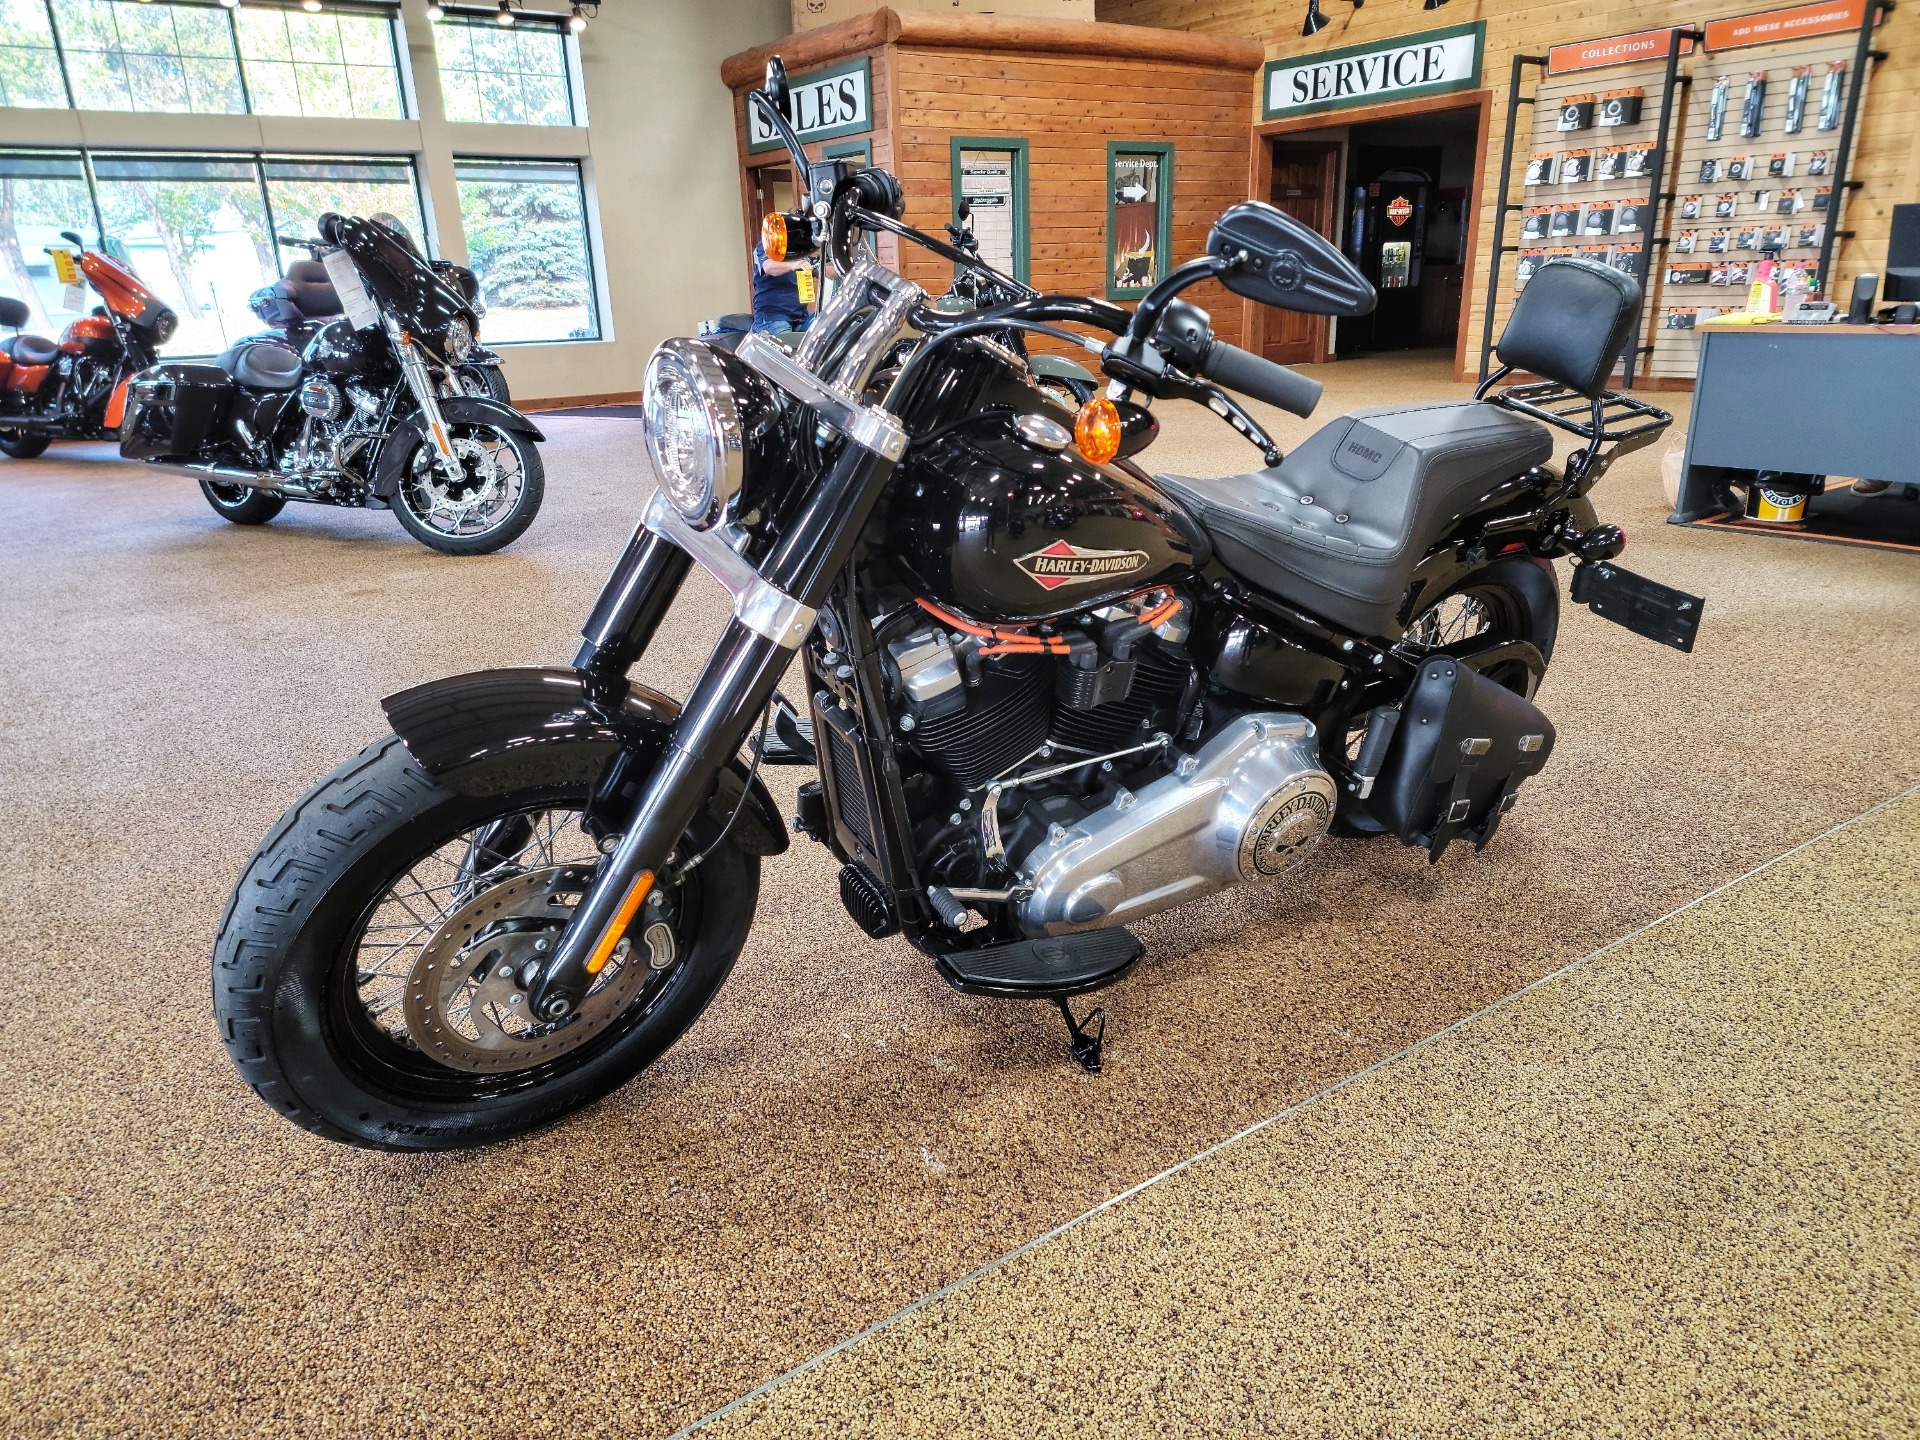 Used 2018 Harley Davidson Softail Slim 107 Vivid Black Motorcycles In Sauk Rapids Mn B0035